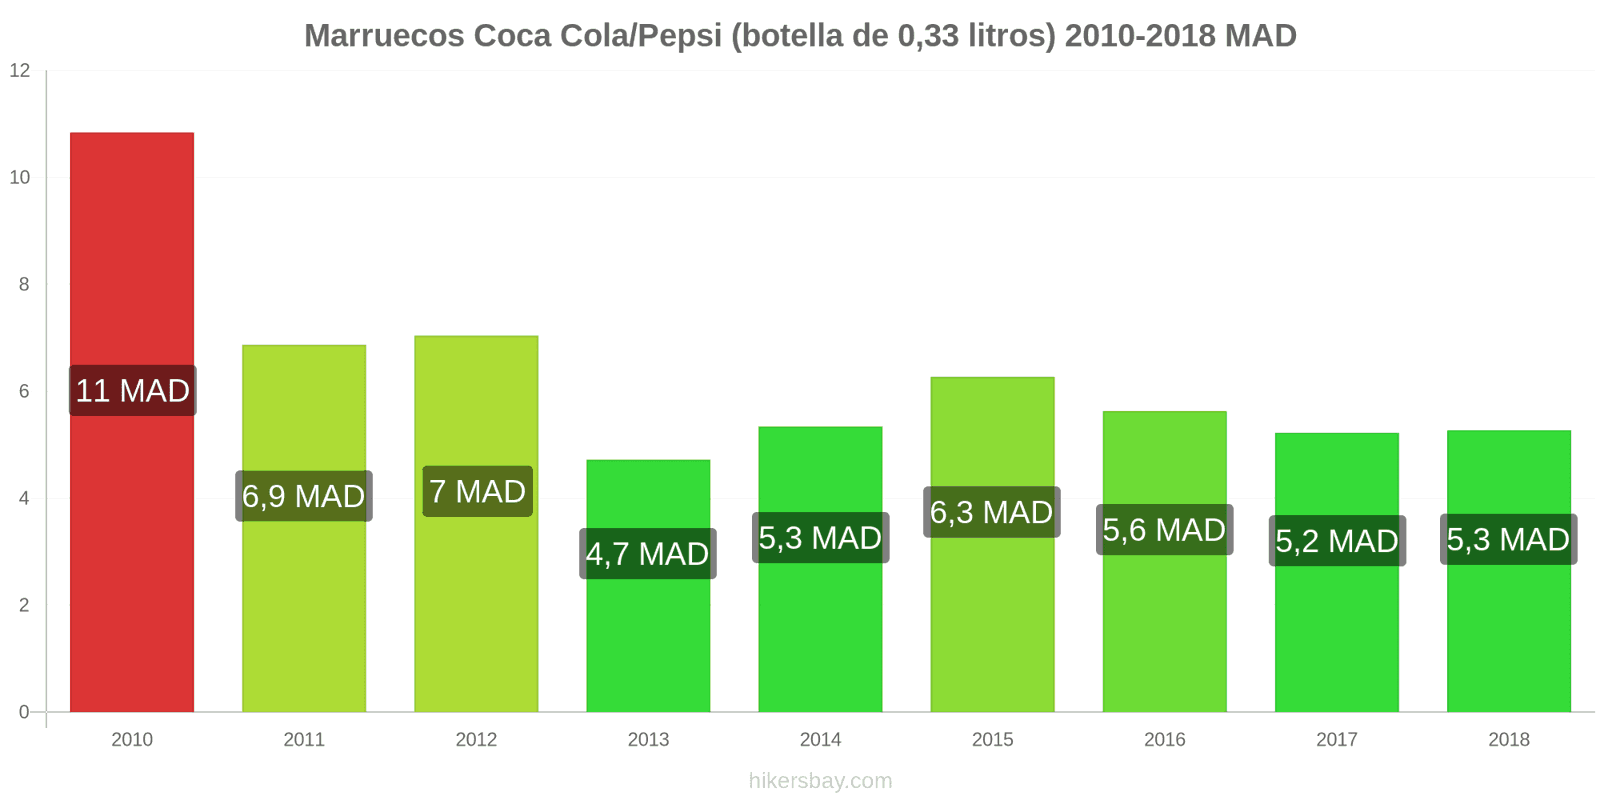 Marruecos cambios de precios Coca-Cola/Pepsi (botella de 0.33 litros) hikersbay.com